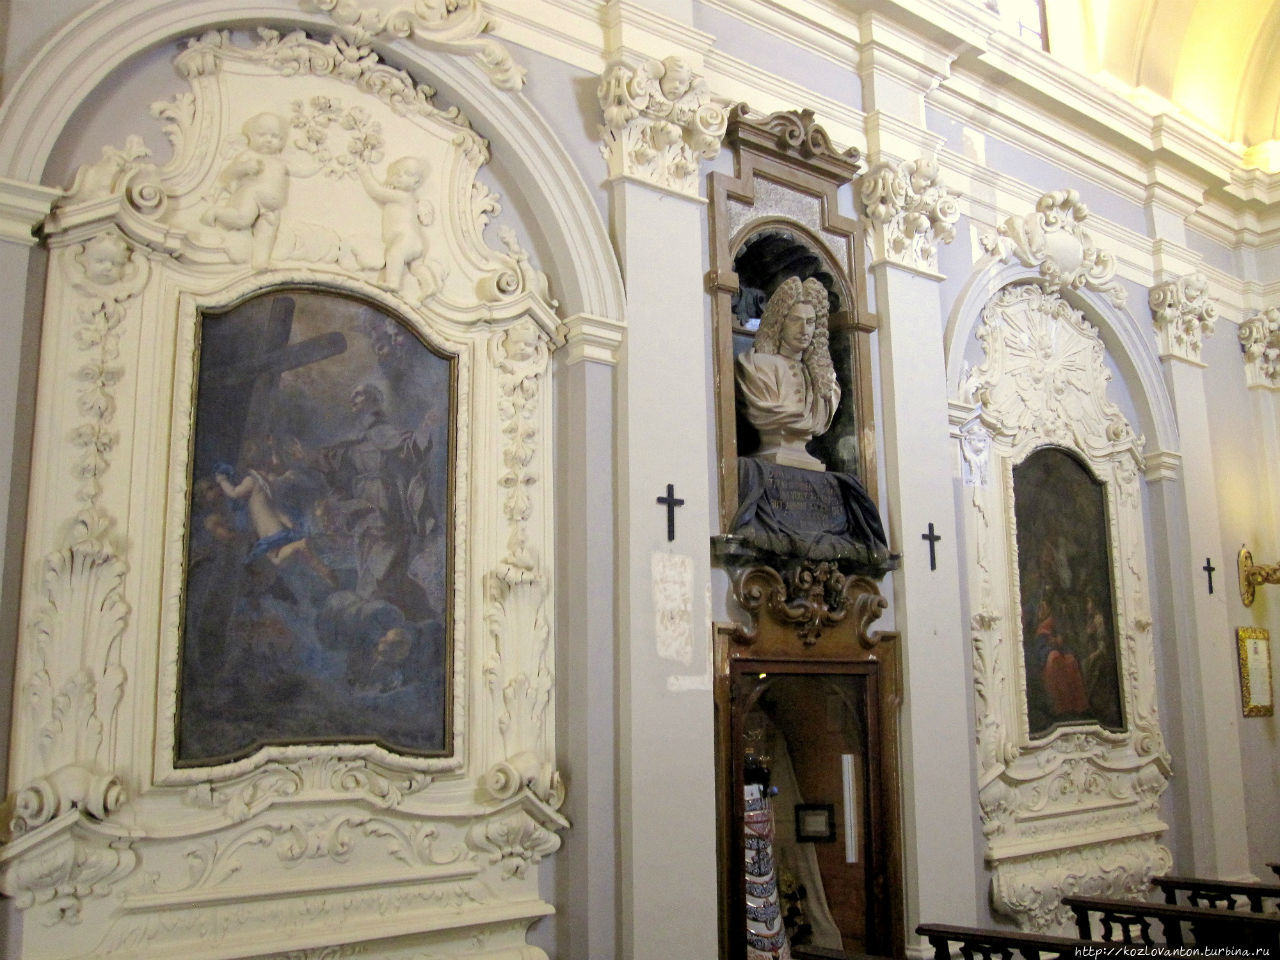 На левой стене часовни бюст Джованни Паоло Валлони, который в 1729 был избран капитаном-регентом республики, а также картины Пророчество Симеона старшего и Св.Петр из Алькантары, испанский францисканец. Сан-Марино, Сан-Марино